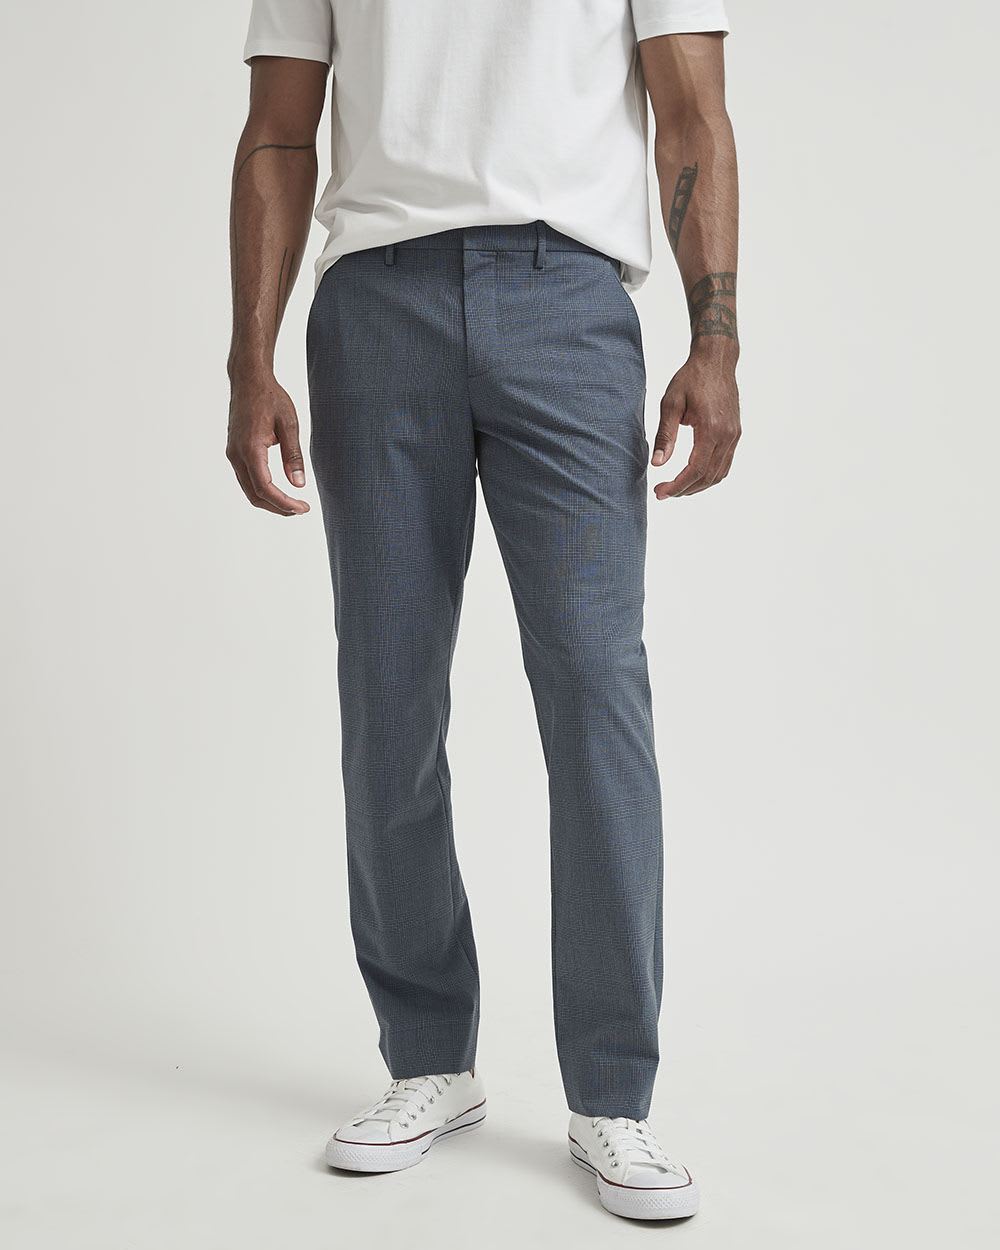 MotionFlexx (R) Tailored Fit Plaid Blue City Pant | RW&CO.